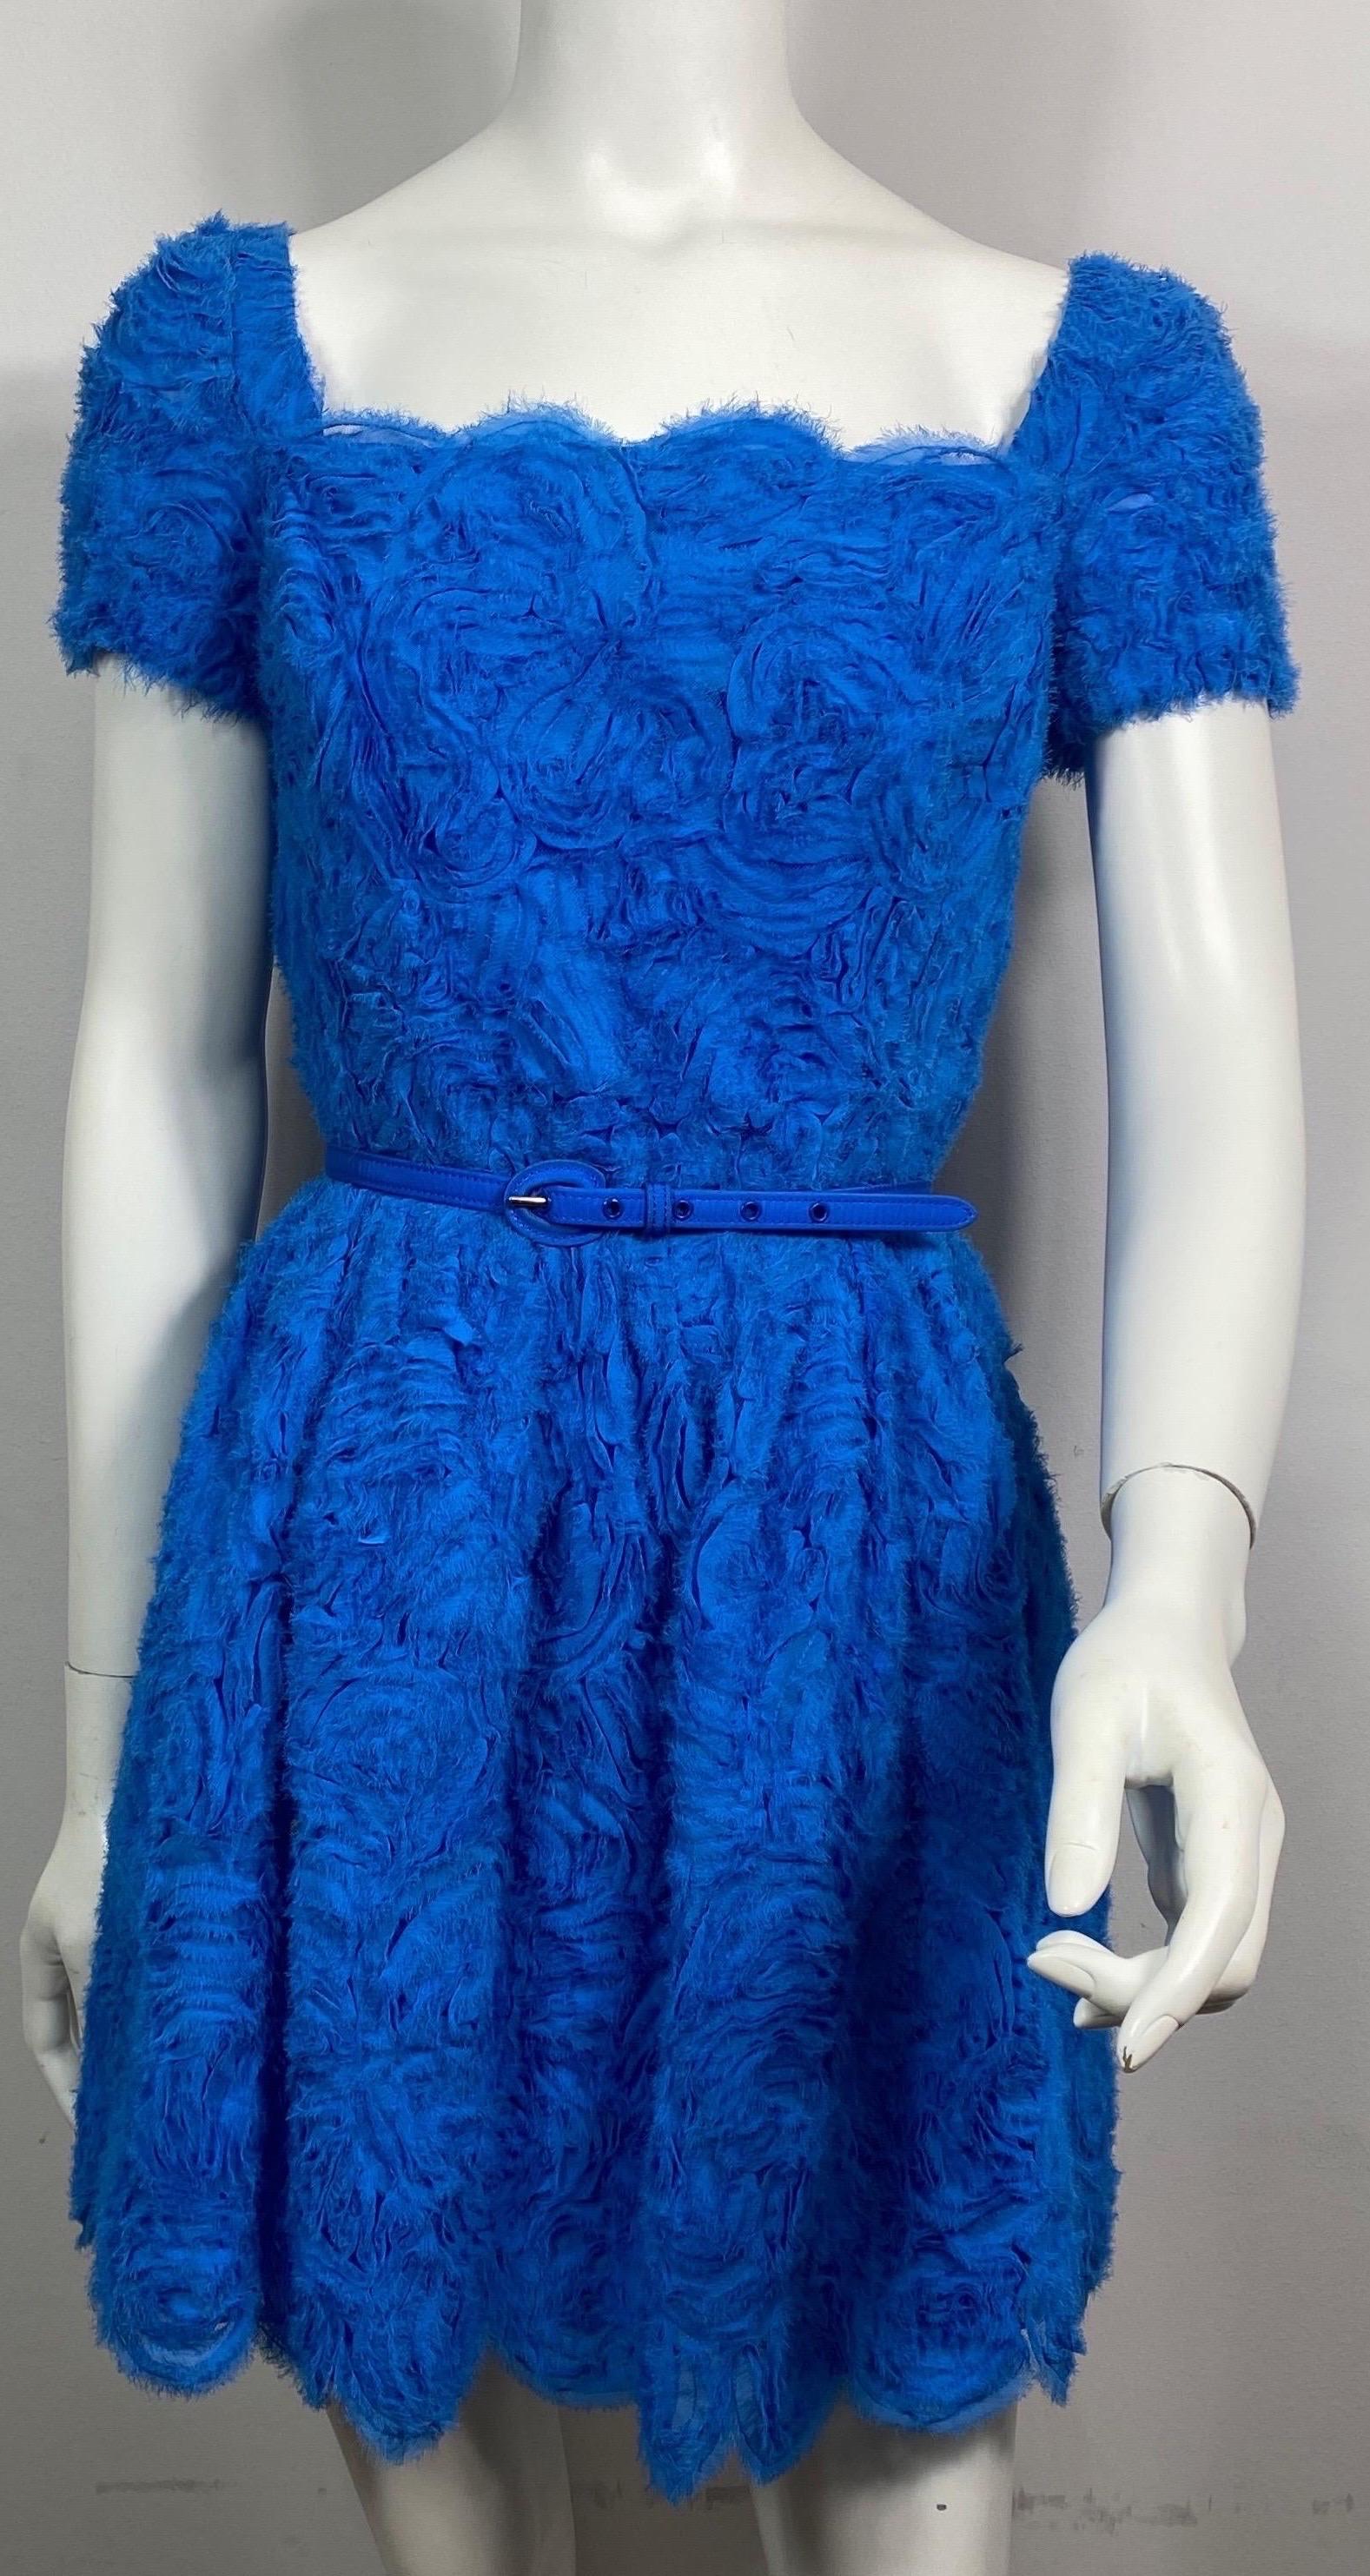 Oscar de La Renta Runway Resort 2013 Royal Blue Chiffon Rosette Embellished Dress-Size 4 Cette mini-robe bleu roi pacifique quelque peu est faite d'un tissu qui est des bandes de mousseline de soie (avec des bords effilochés) cousues à la main comme